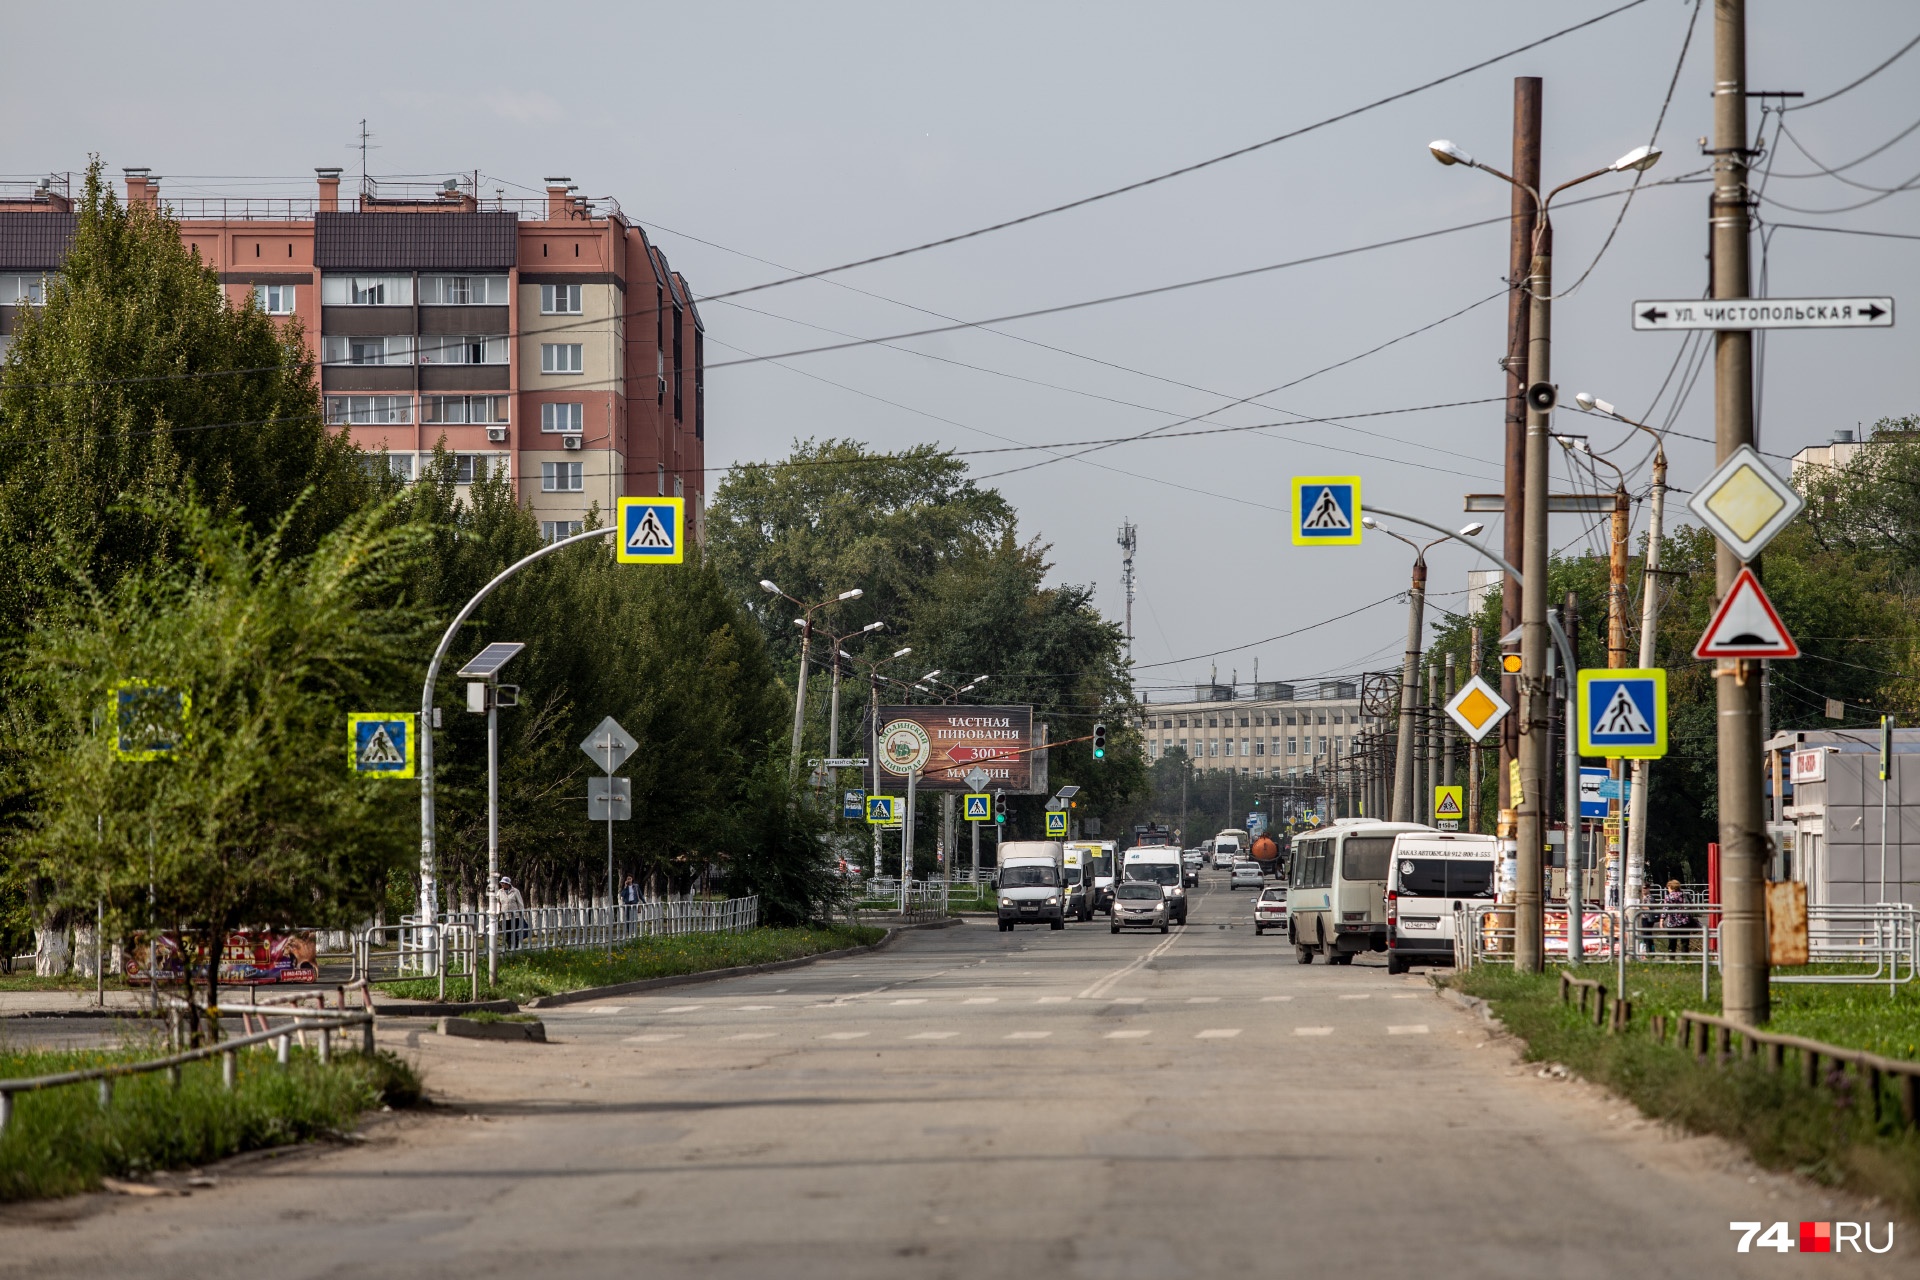 Расстояние от окраины Сельмаша до главной площади Челябинска — девять километров напрямую